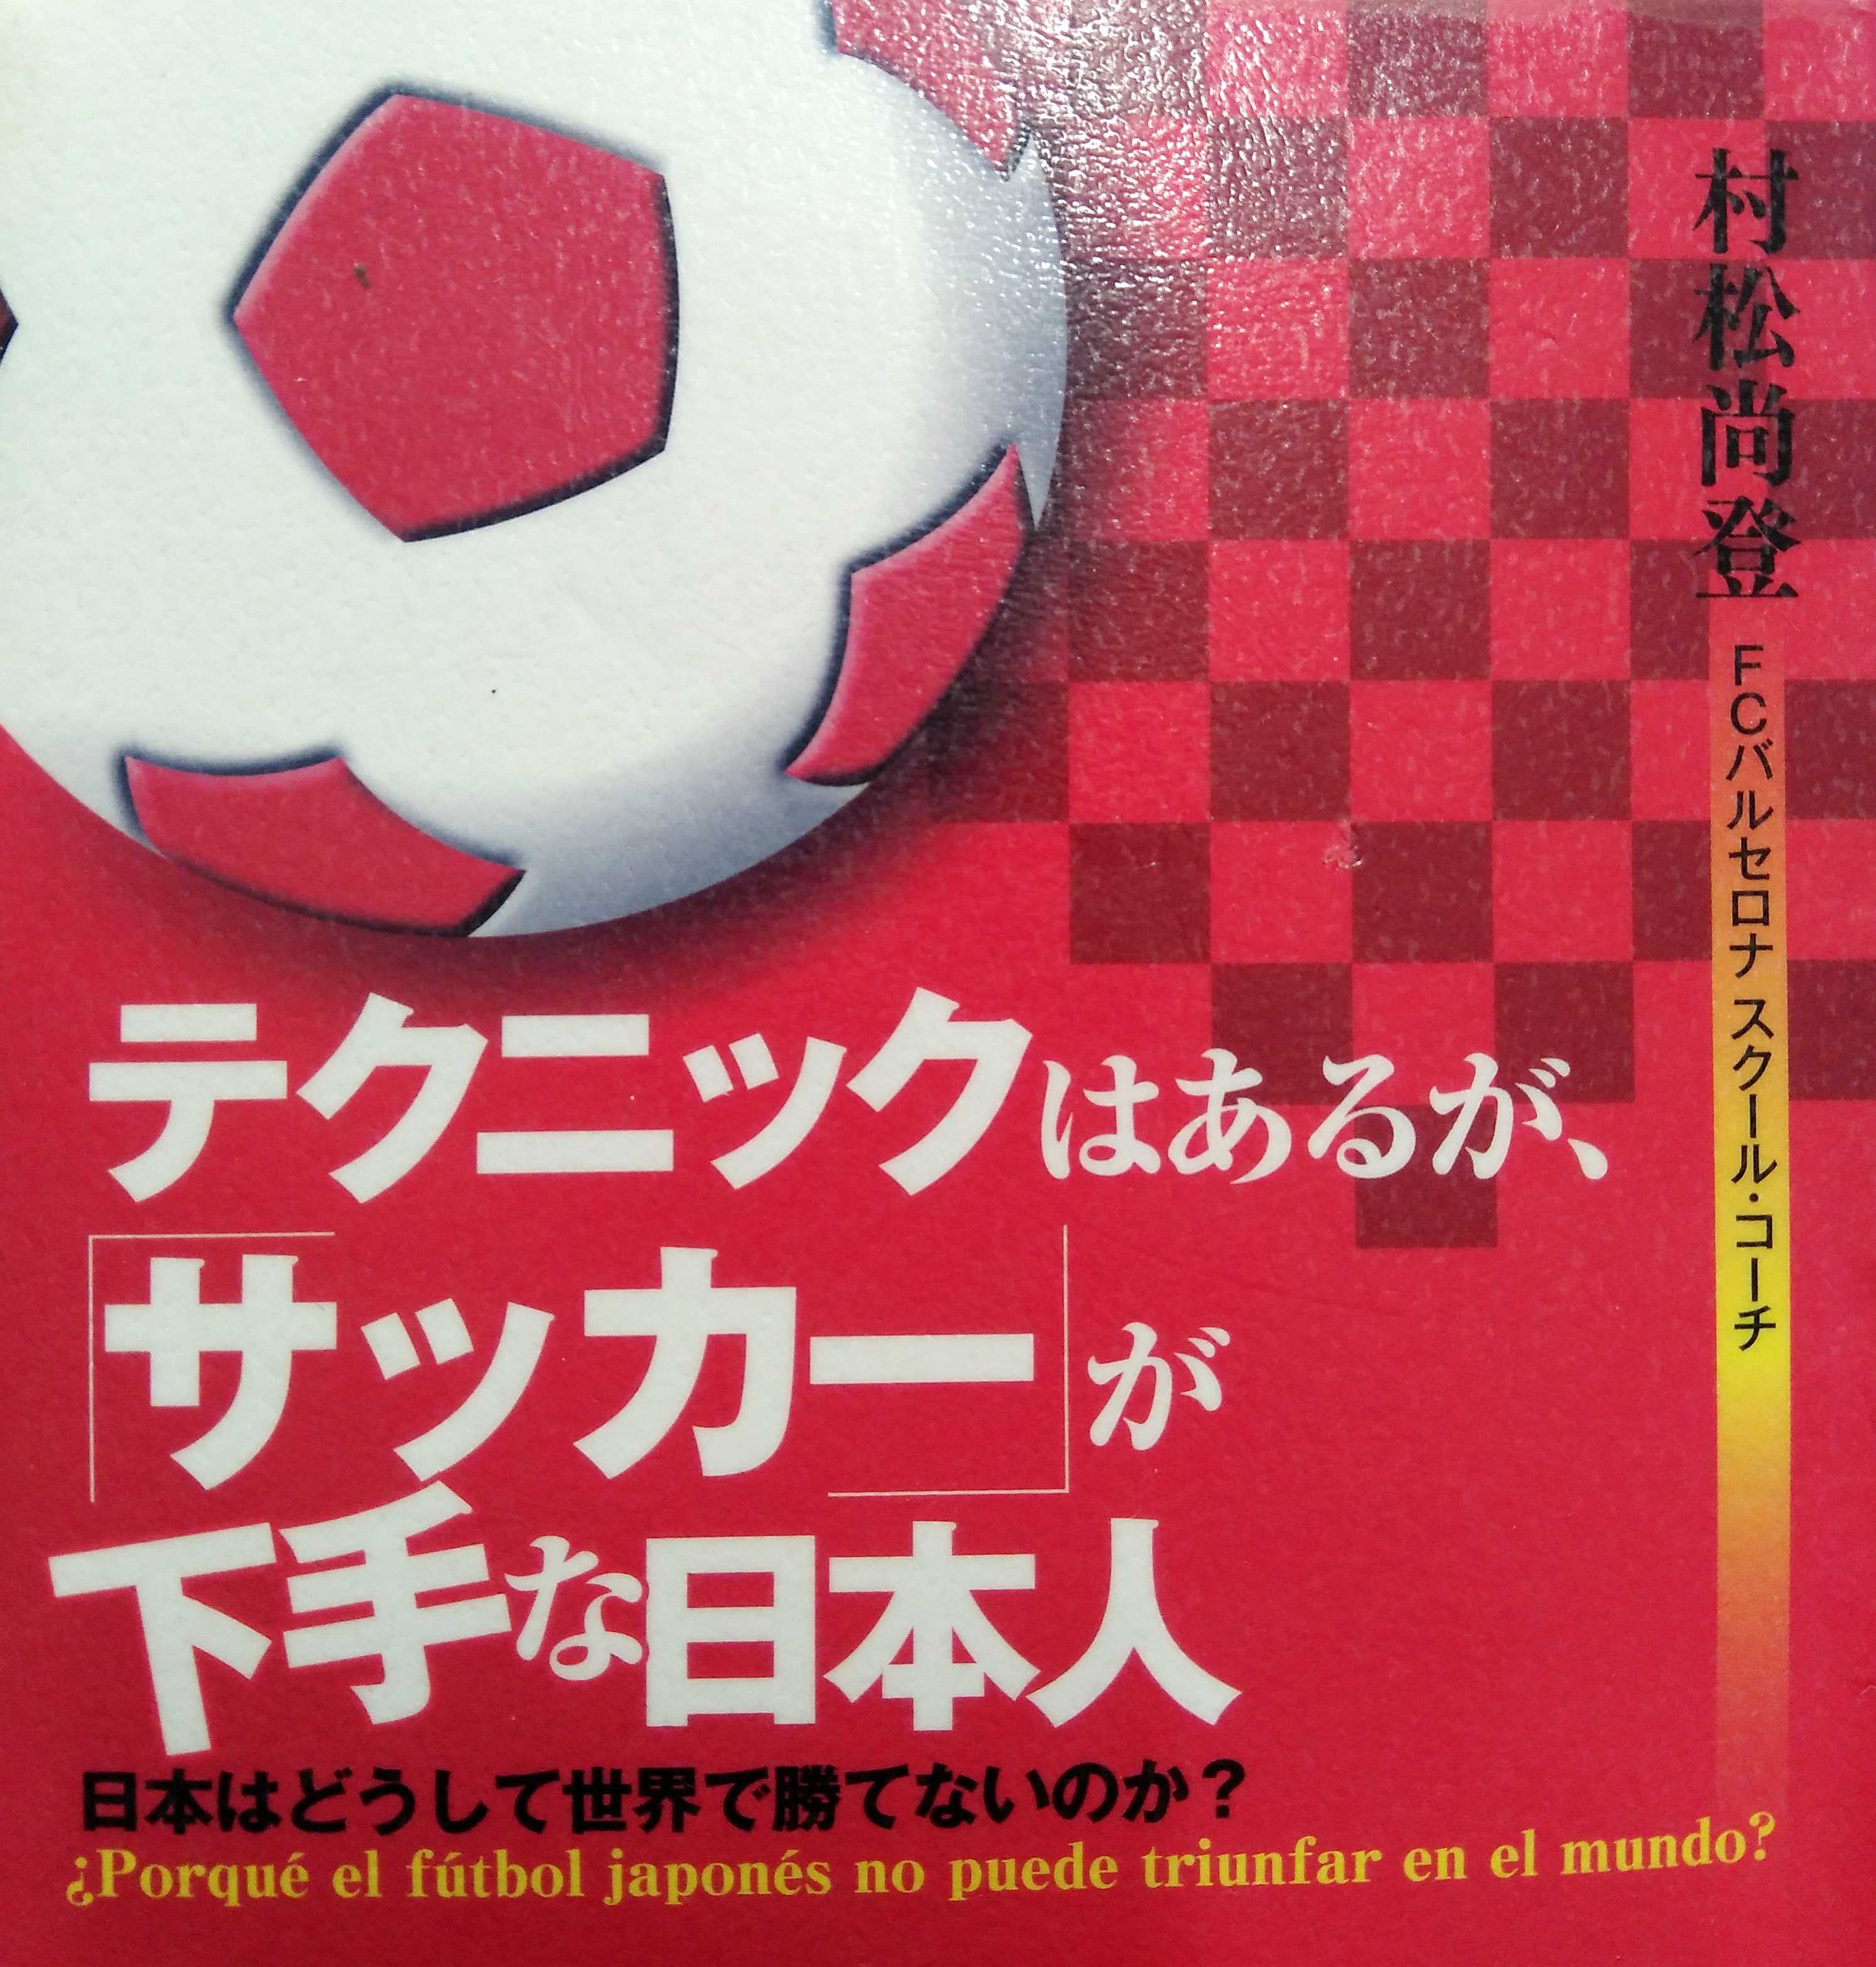 テクニックはあるが サッカー が下手な日本人 村松尚登 小林亮太郎ブログ 楽天ブログ